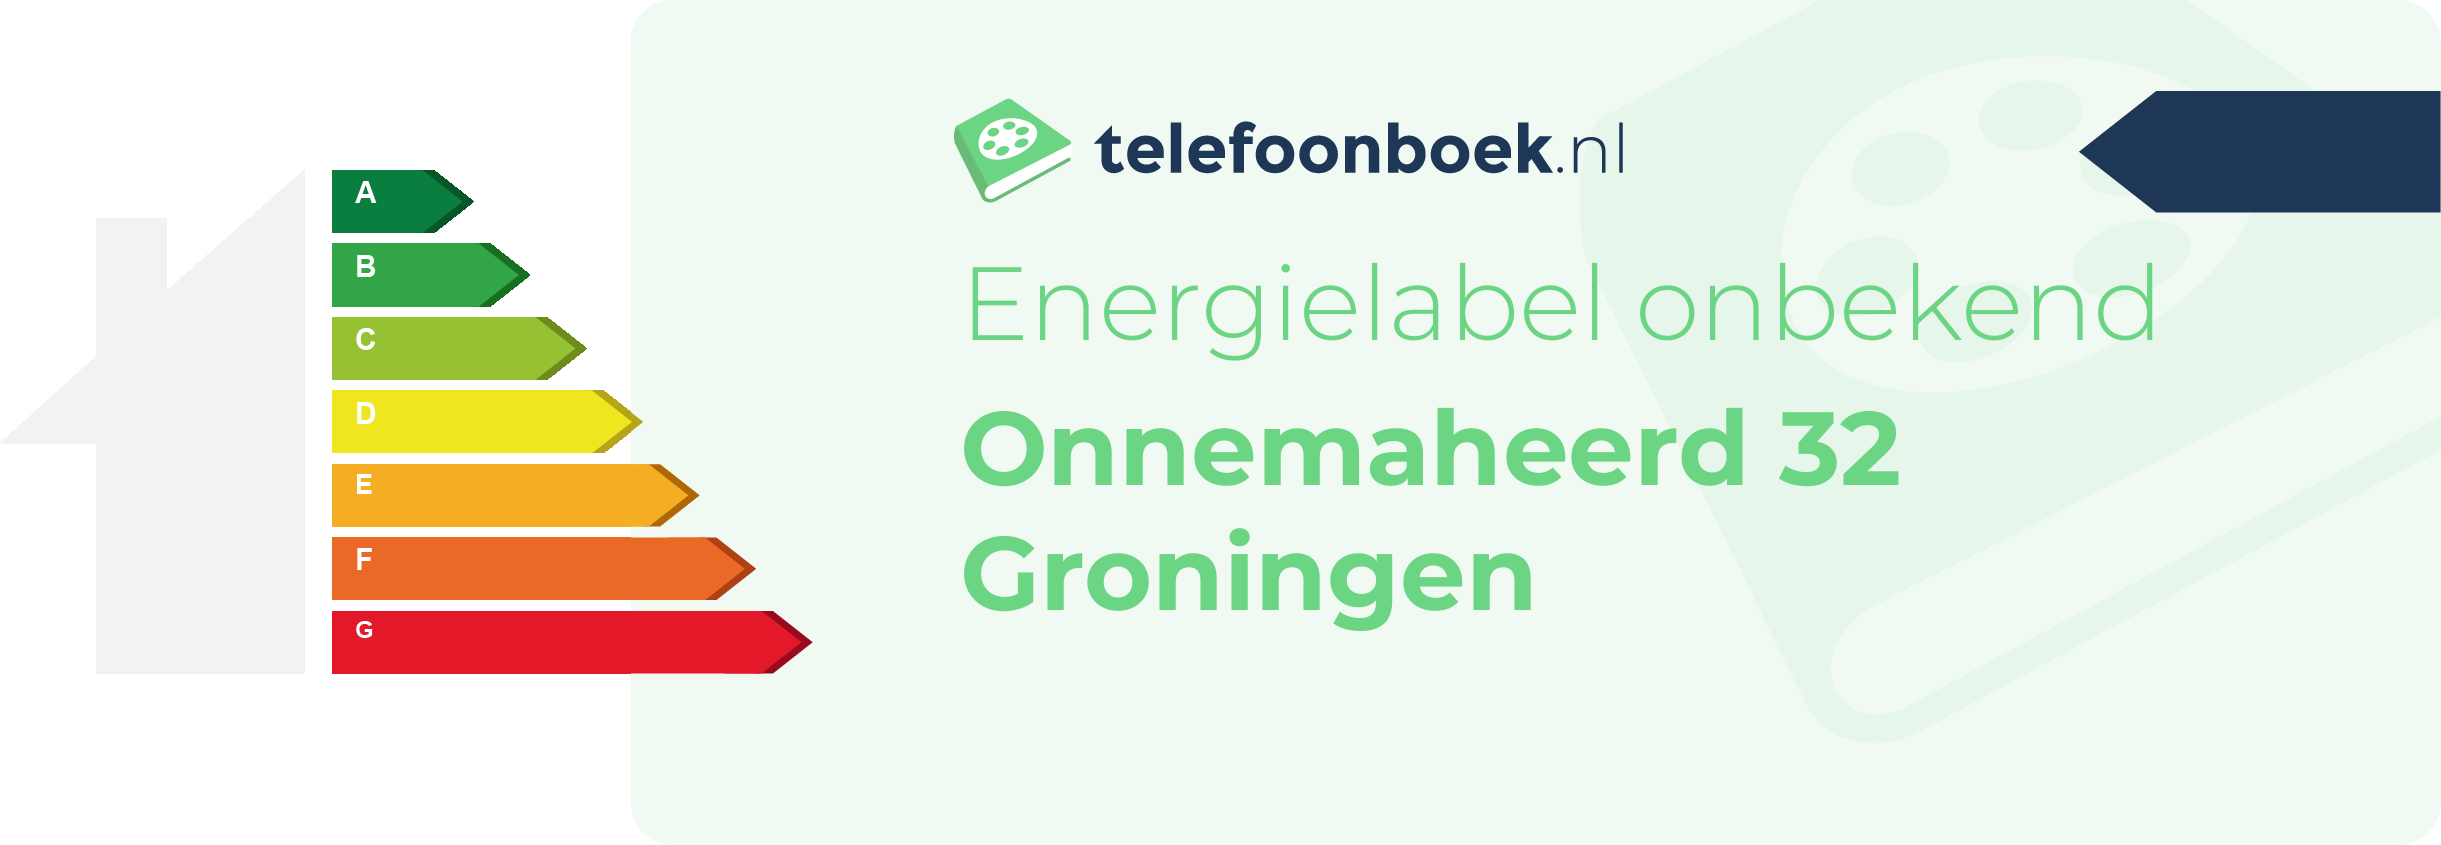 Energielabel Onnemaheerd 32 Groningen